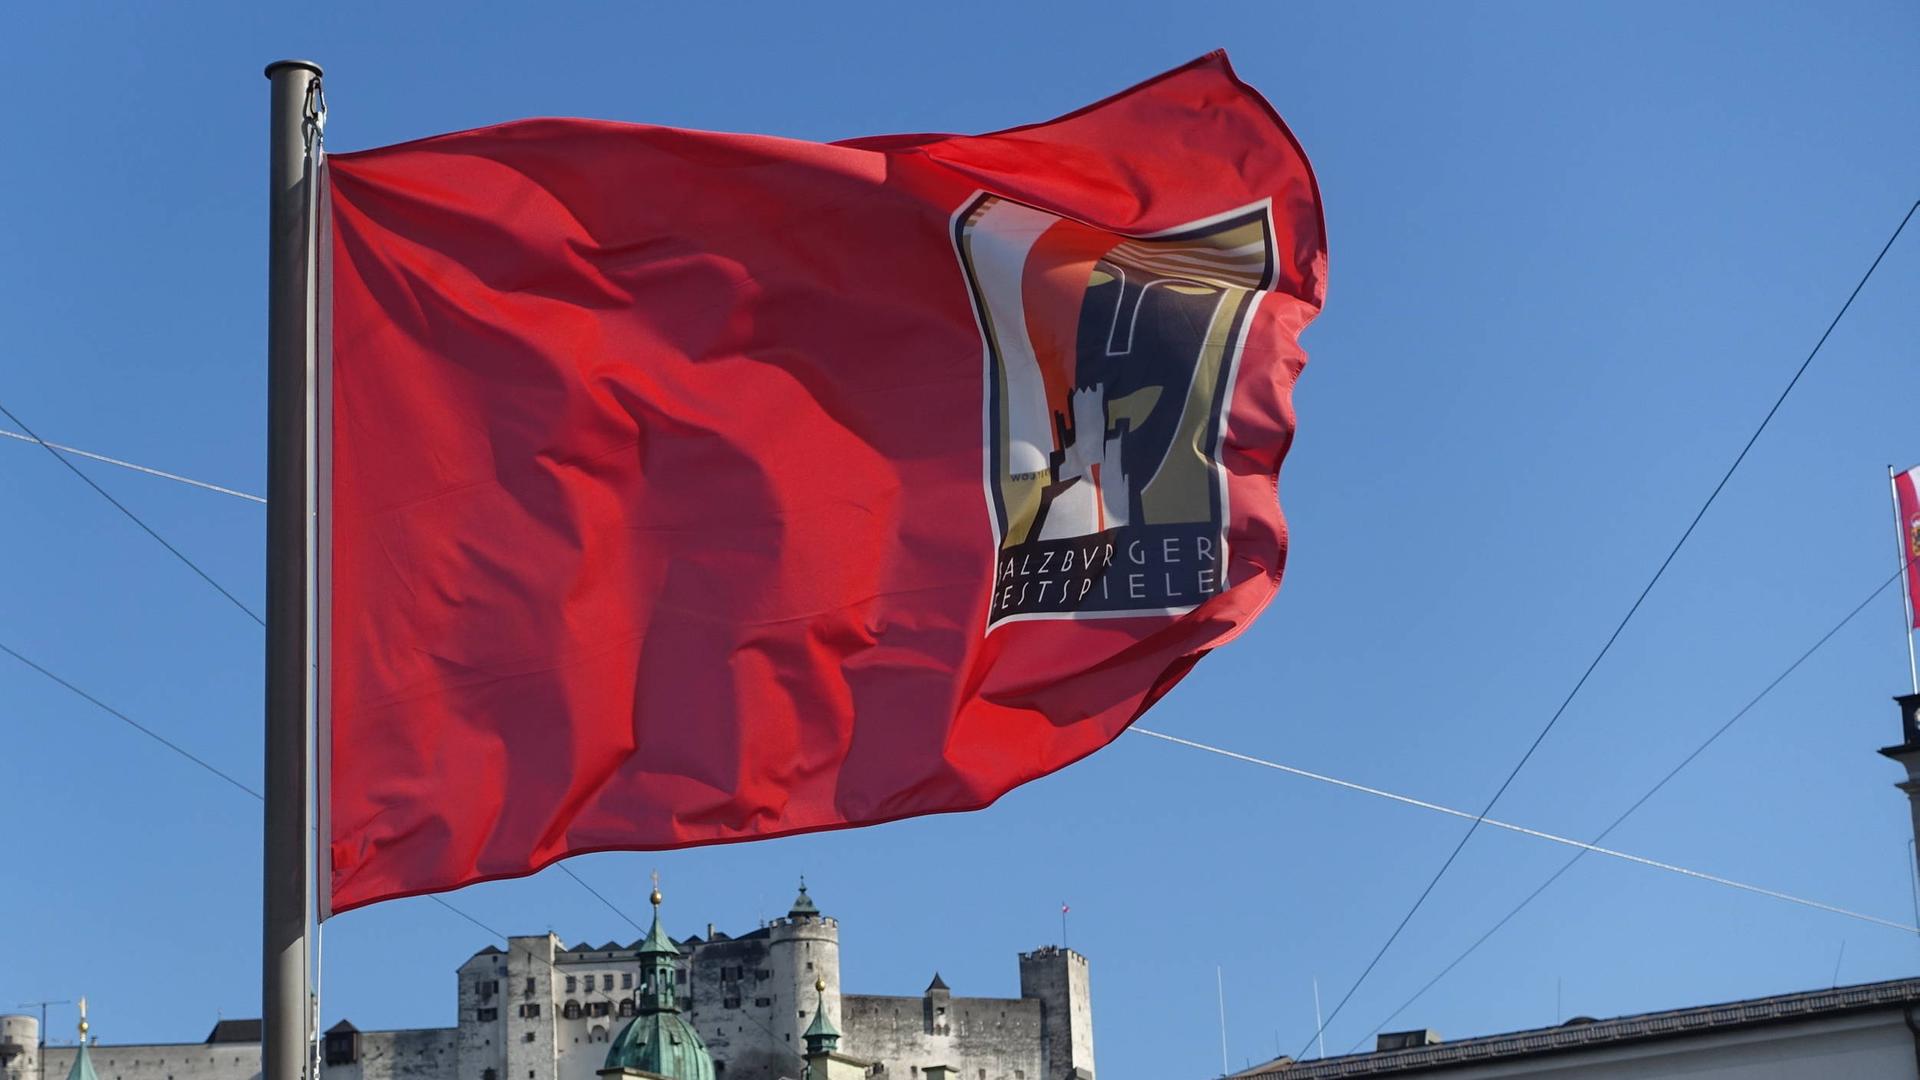 Wir sehen eine rote Fahne. Auf ihr steht geschrieben "Salzburger Festspiele".